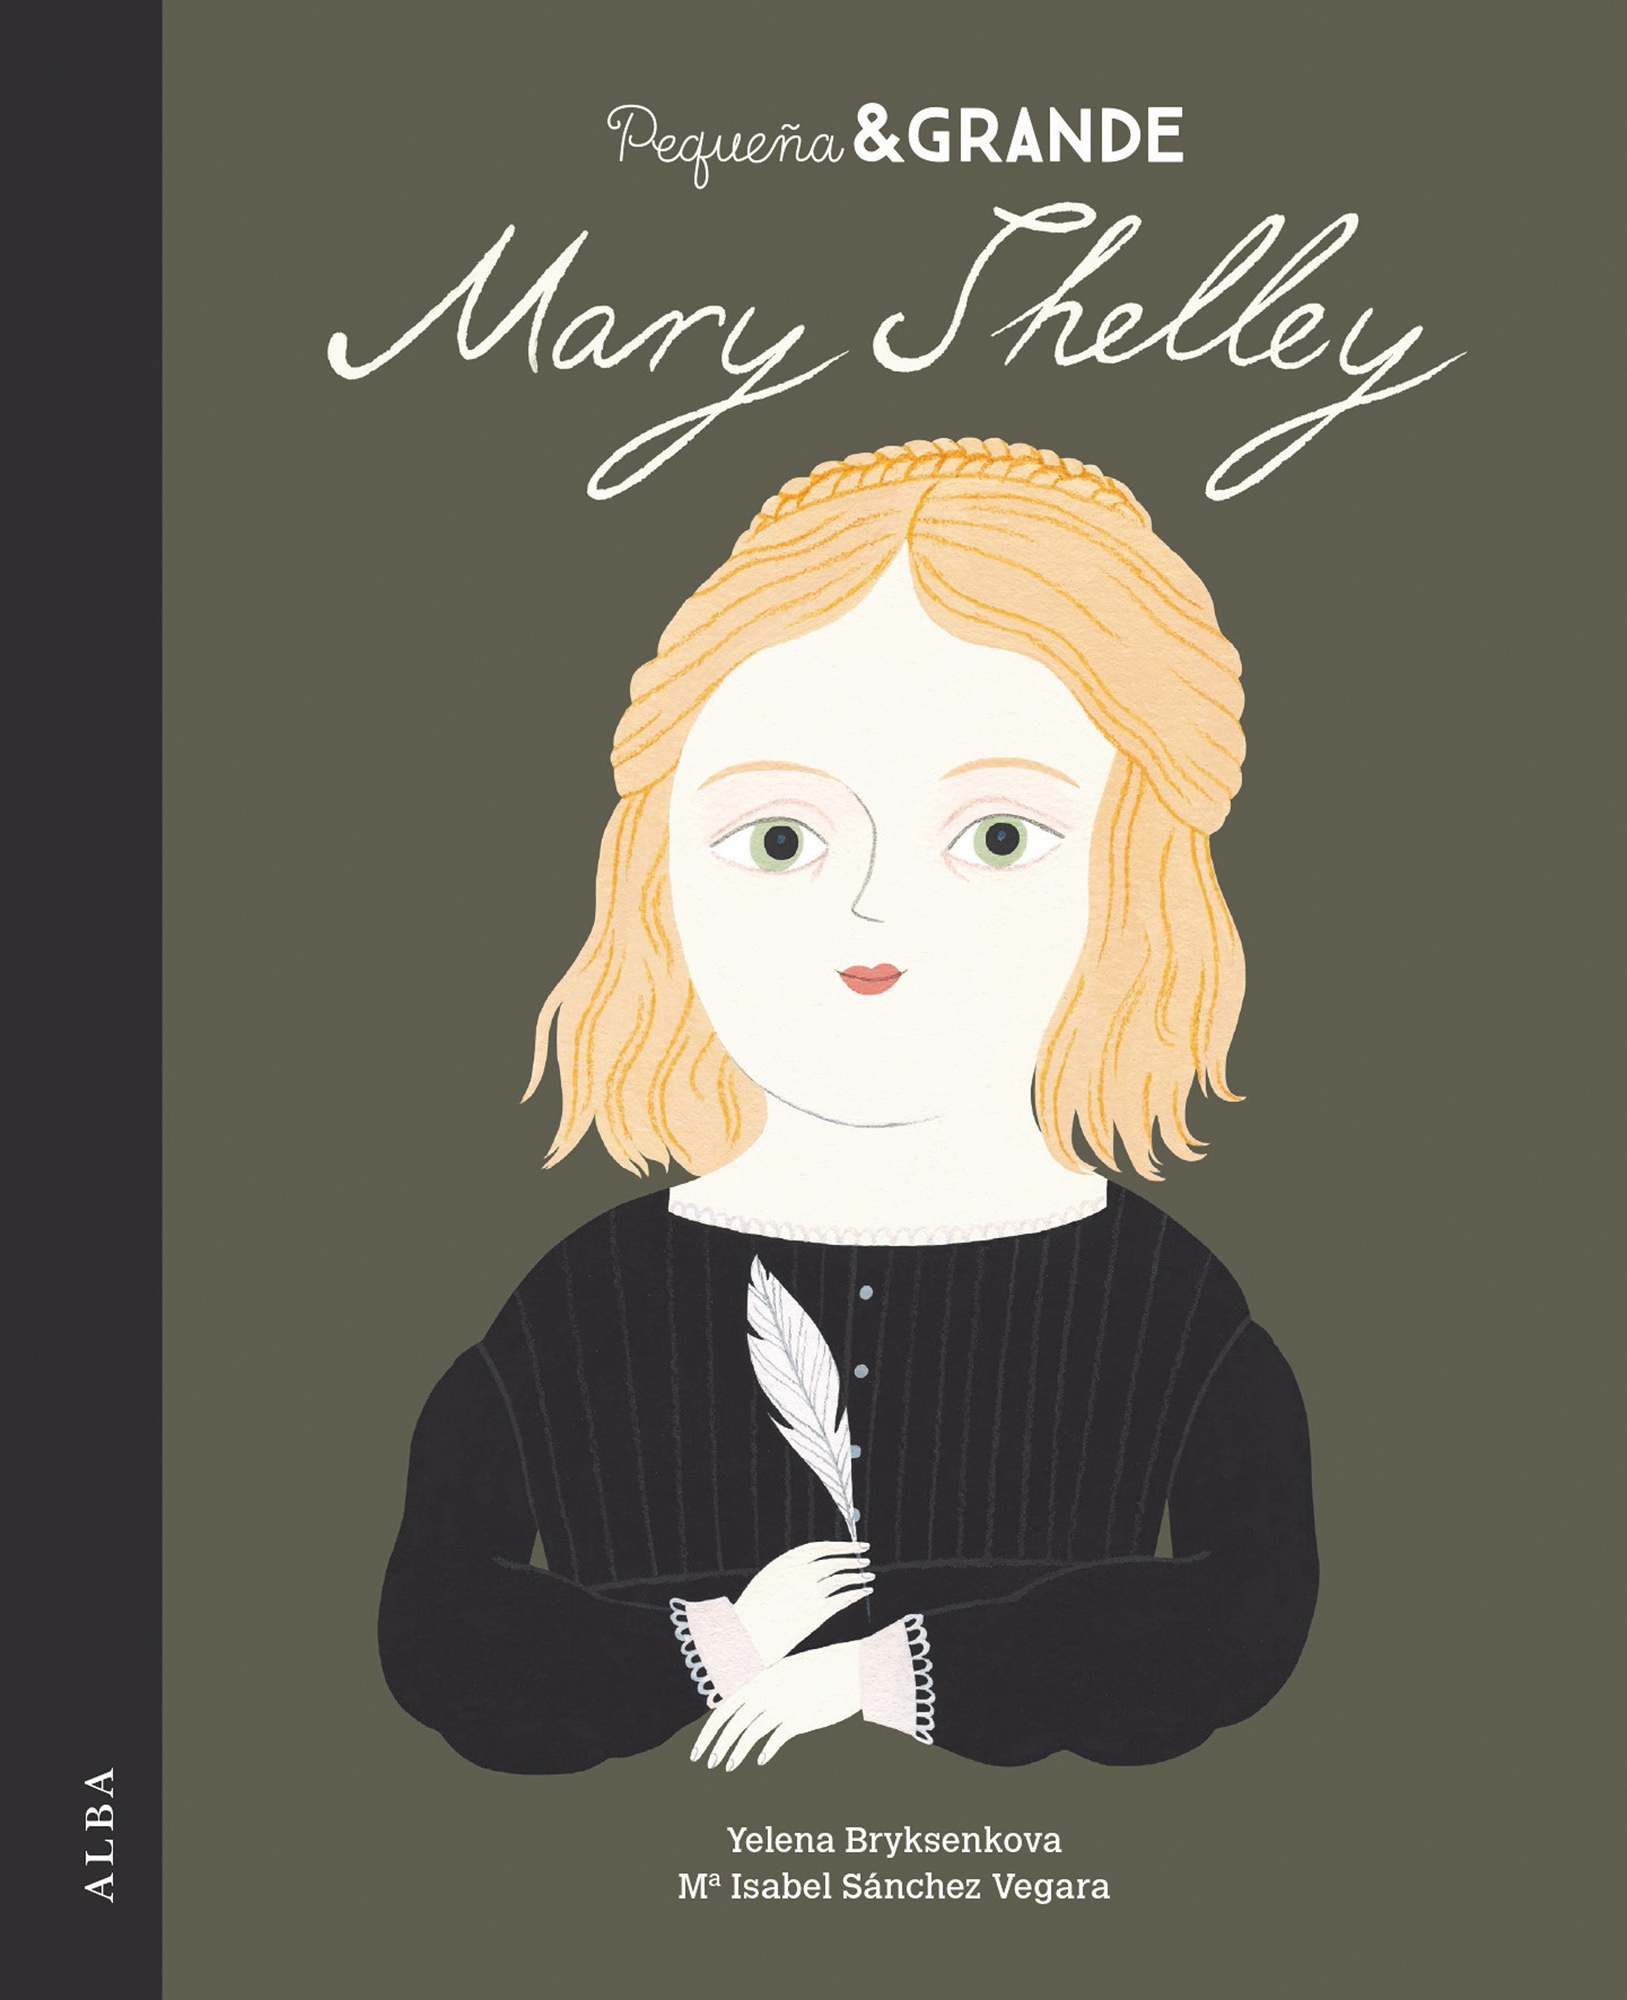 Pequeña & Grande Mary Shelley (9788490656037)